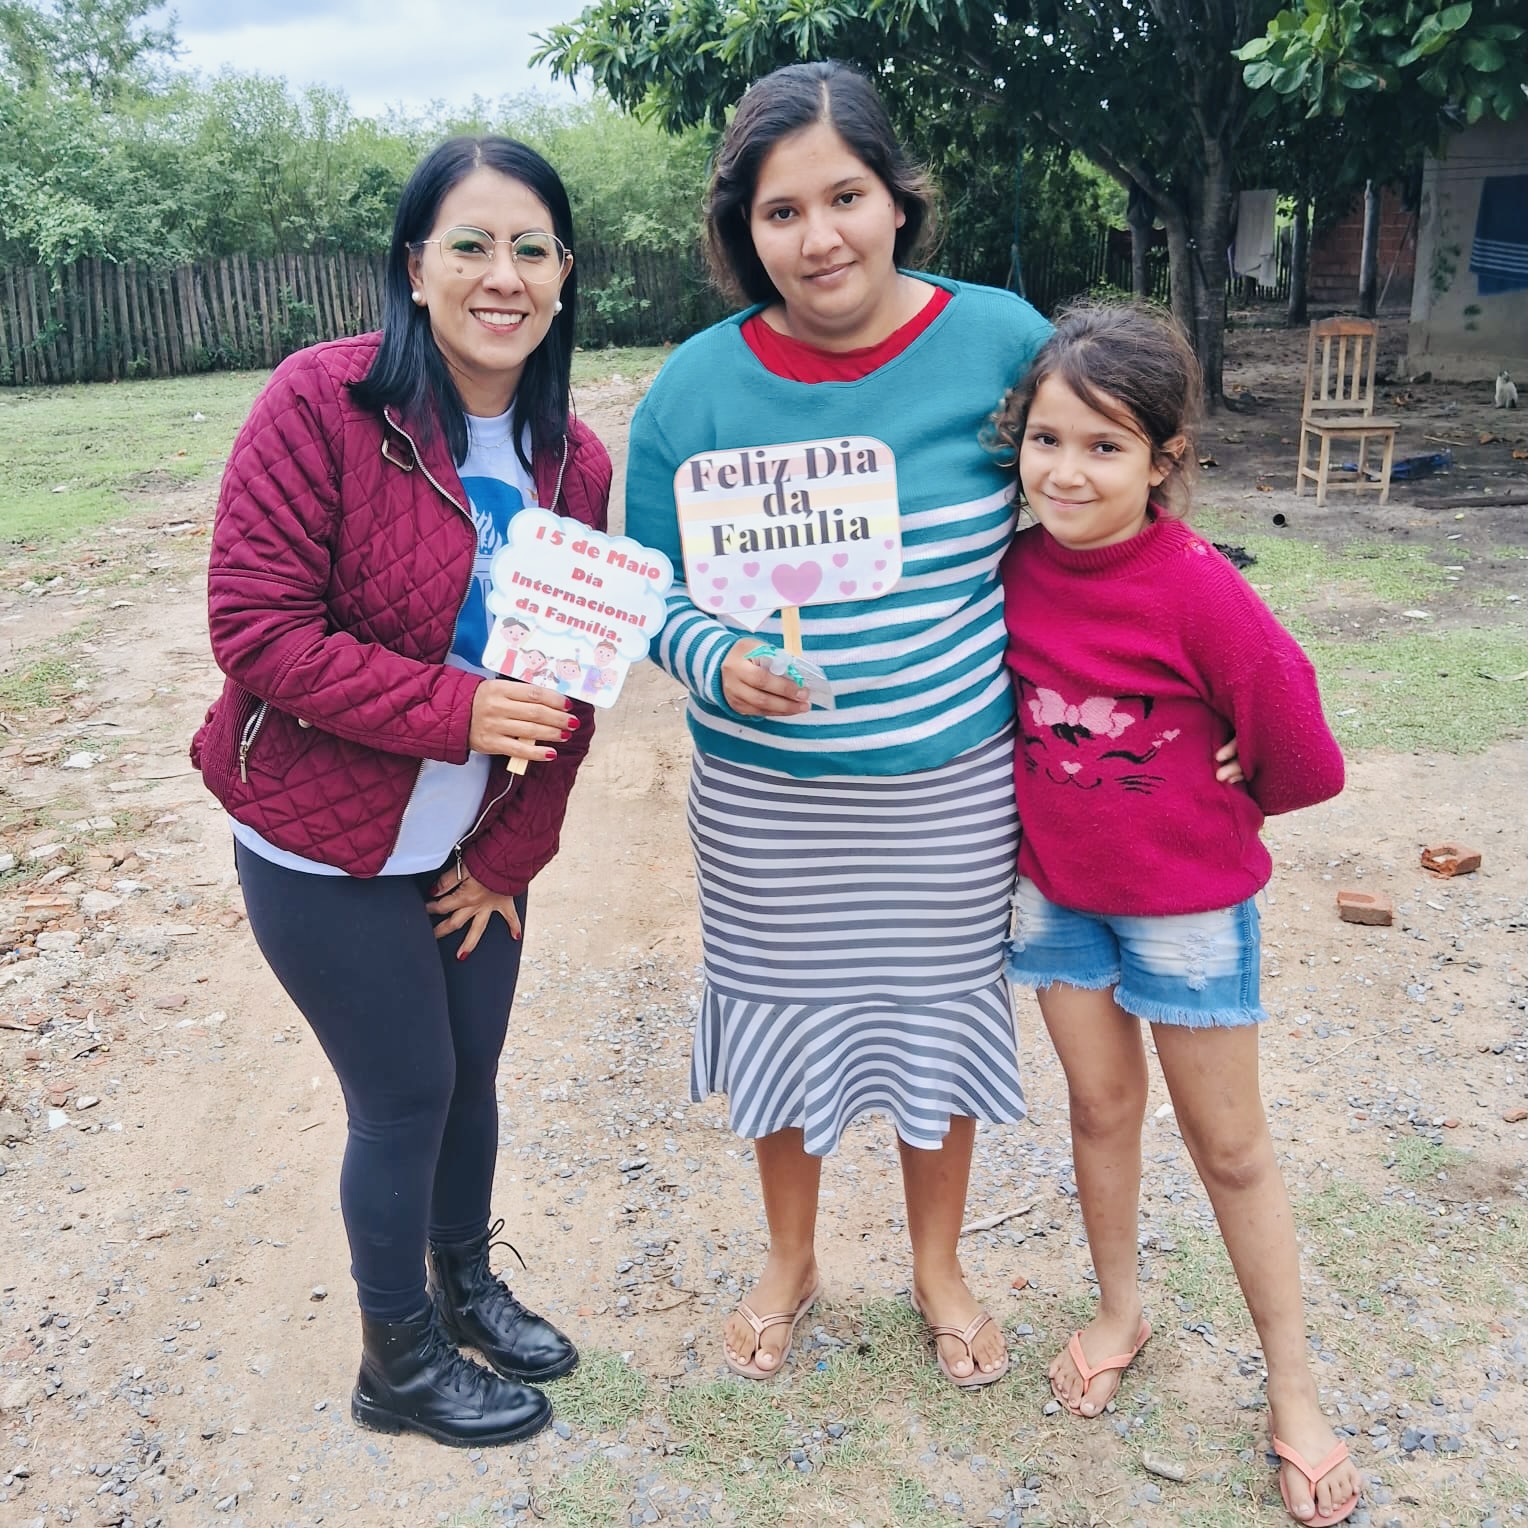 Porto Murtinho Realiza Dia da Família com Foco no Fortalecimento dos Vínculos Familiares